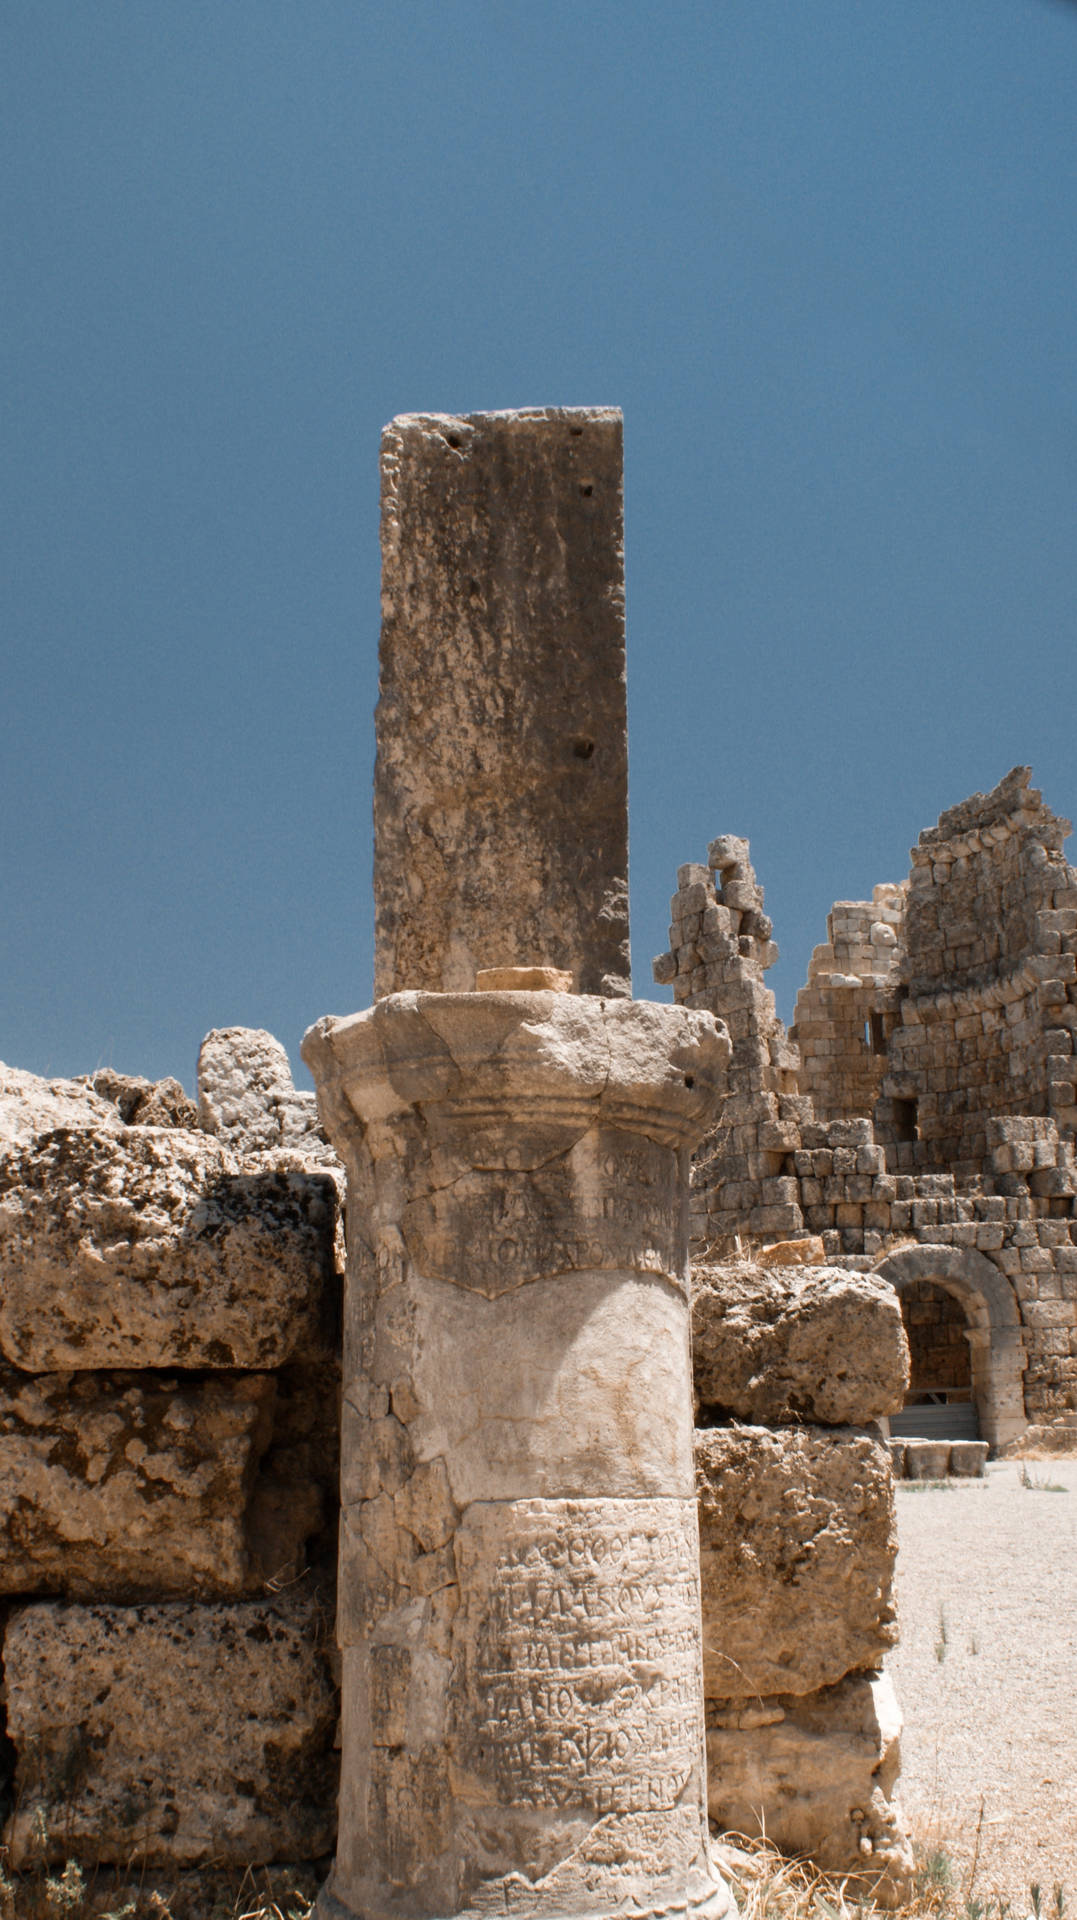 Carthage Stone Pillar's håndtegninger viser et majestætisk monument. Wallpaper